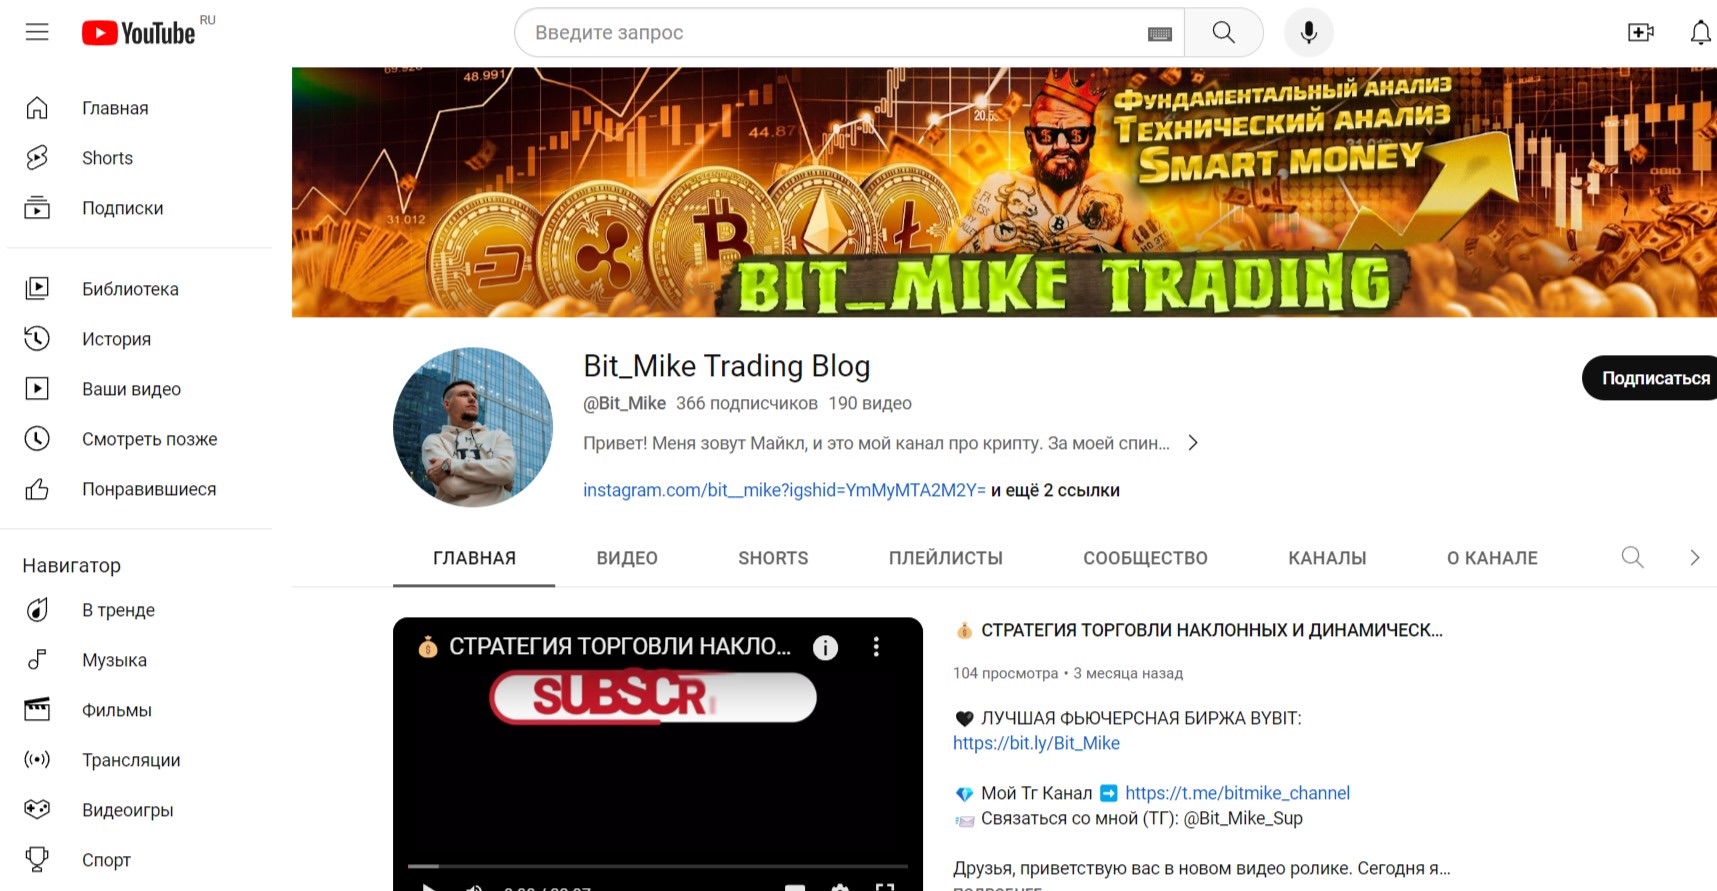 Bit mike trading blog - ютуб